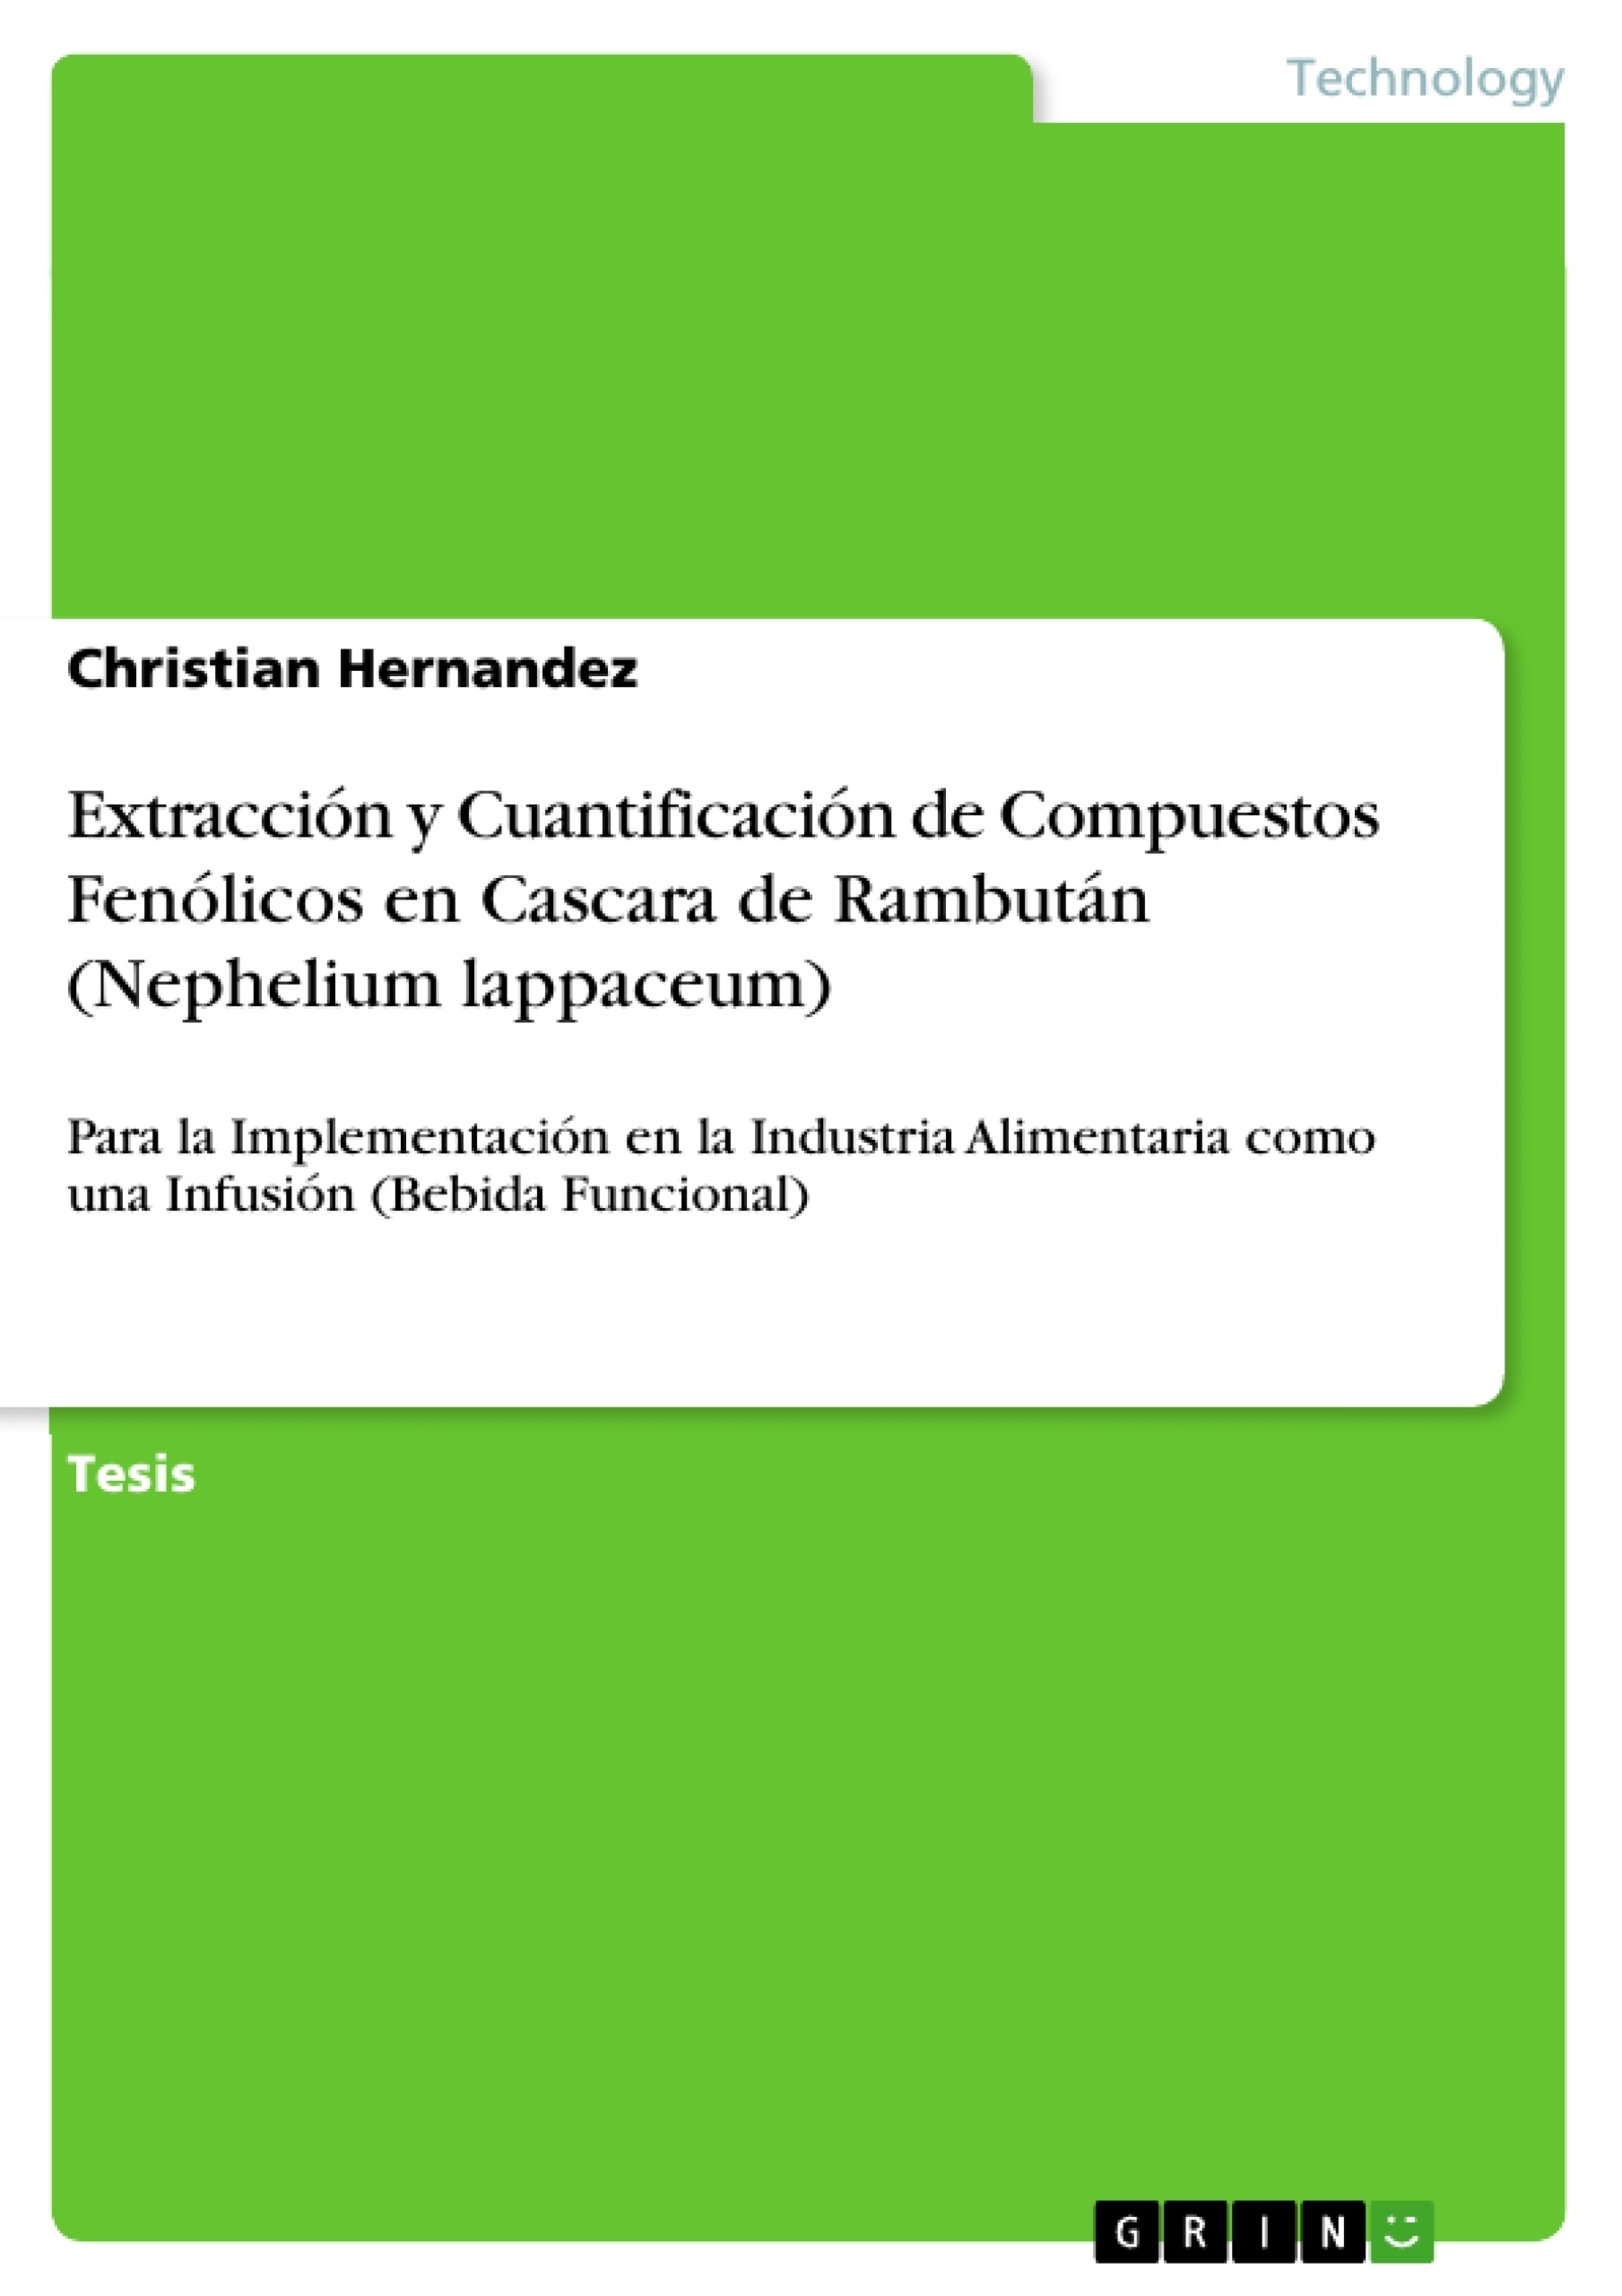 Titre: Extracción y Cuantificación de Compuestos Fenólicos en Cascara de Rambután (Nephelium lappaceum)